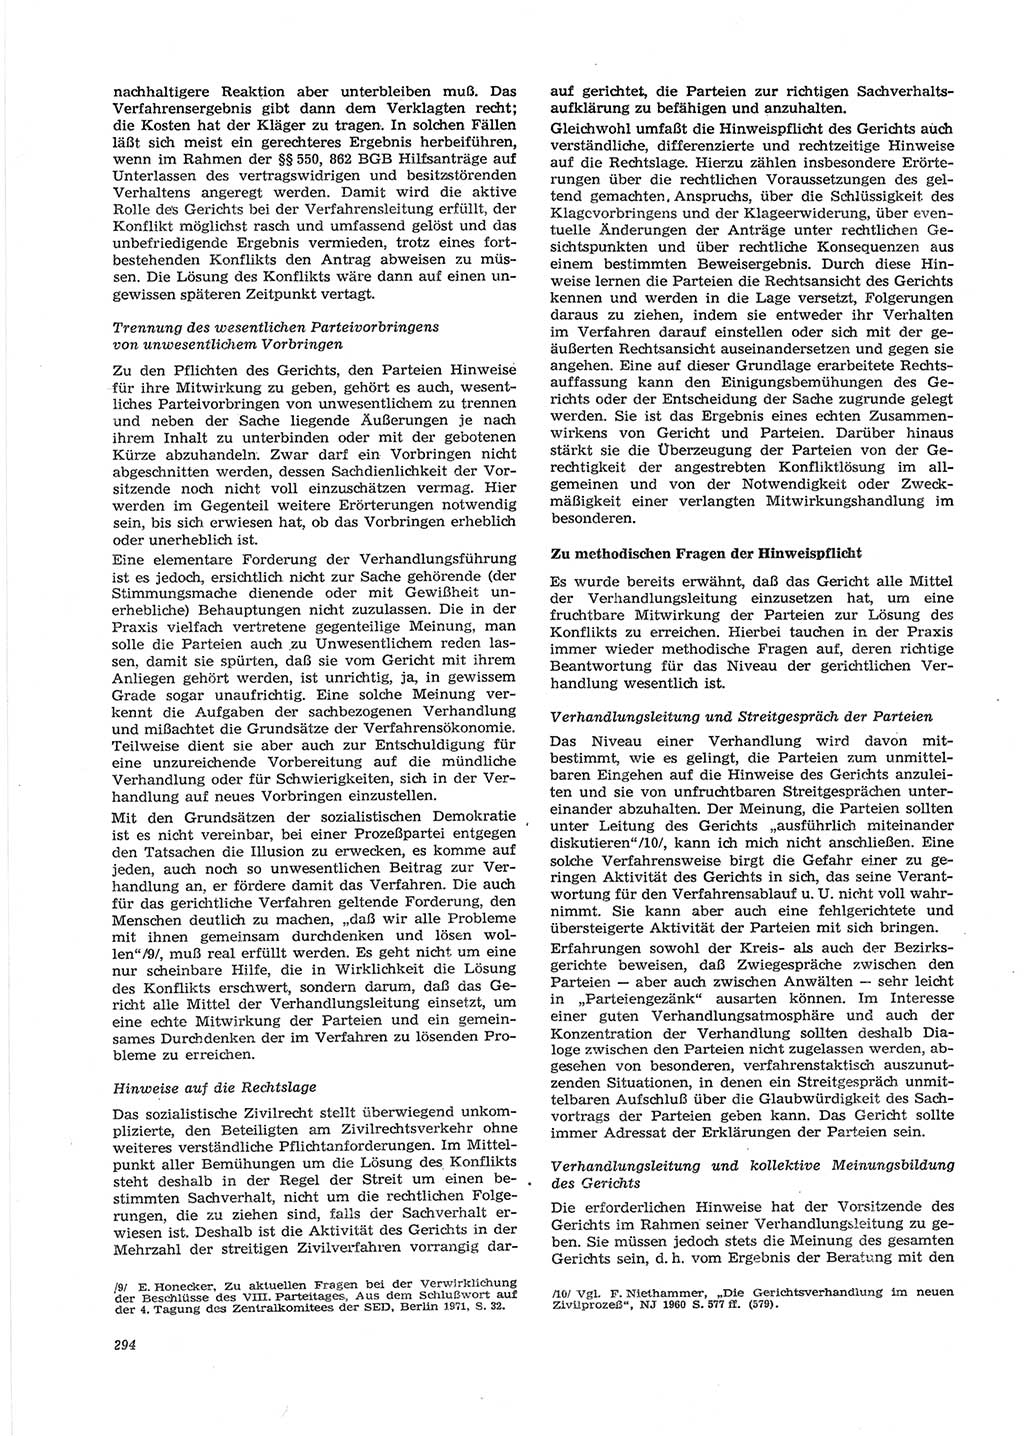 Neue Justiz (NJ), Zeitschrift für Recht und Rechtswissenschaft [Deutsche Demokratische Republik (DDR)], 28. Jahrgang 1974, Seite 294 (NJ DDR 1974, S. 294)